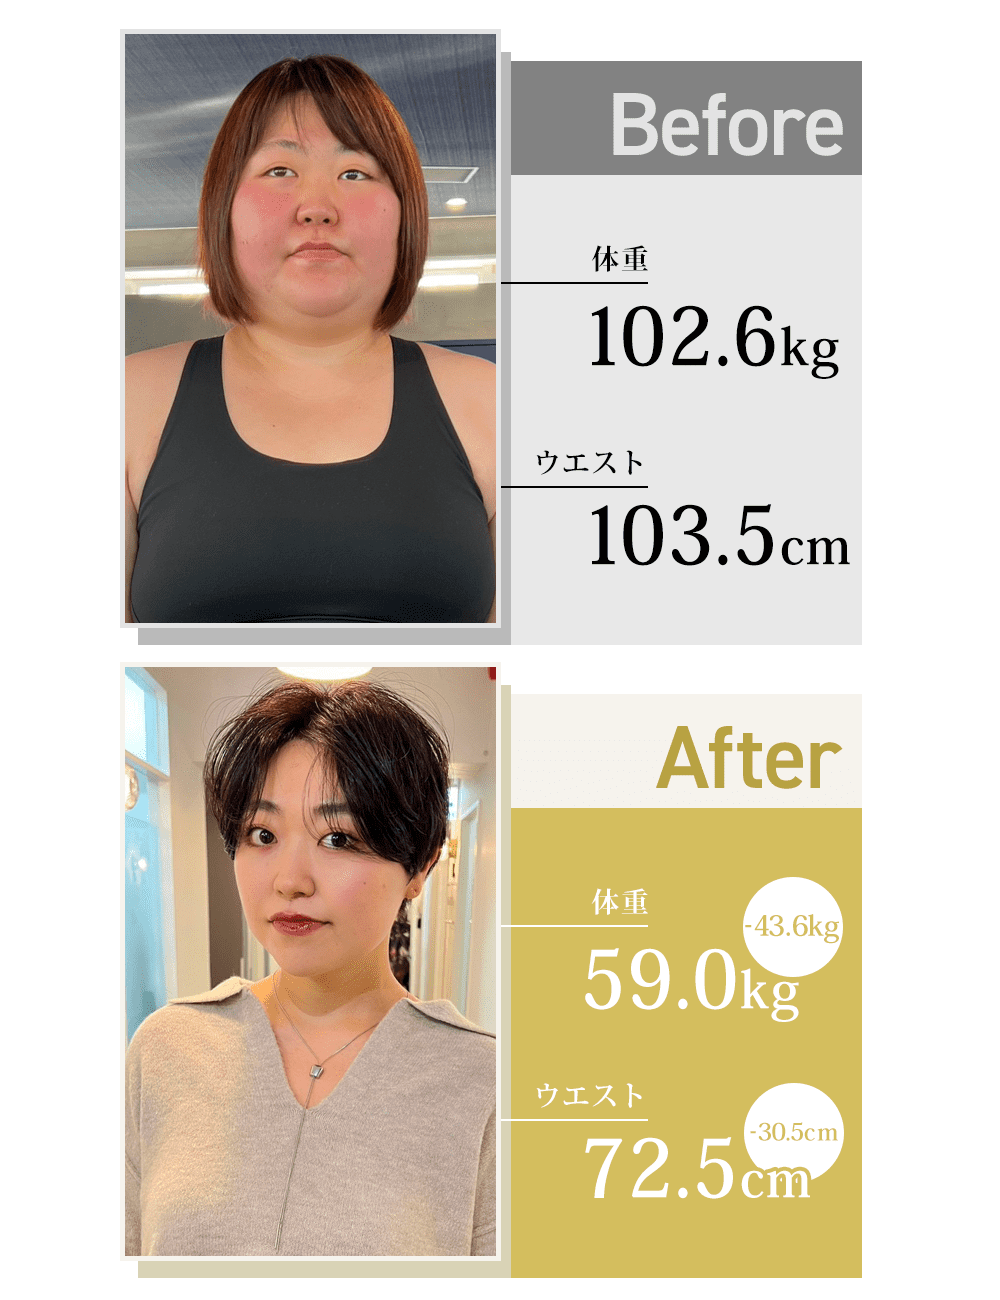 オンラインパーソナルで-43.6kgのダイエットに成功した100kg越えの女性のビフォーアフター詳細